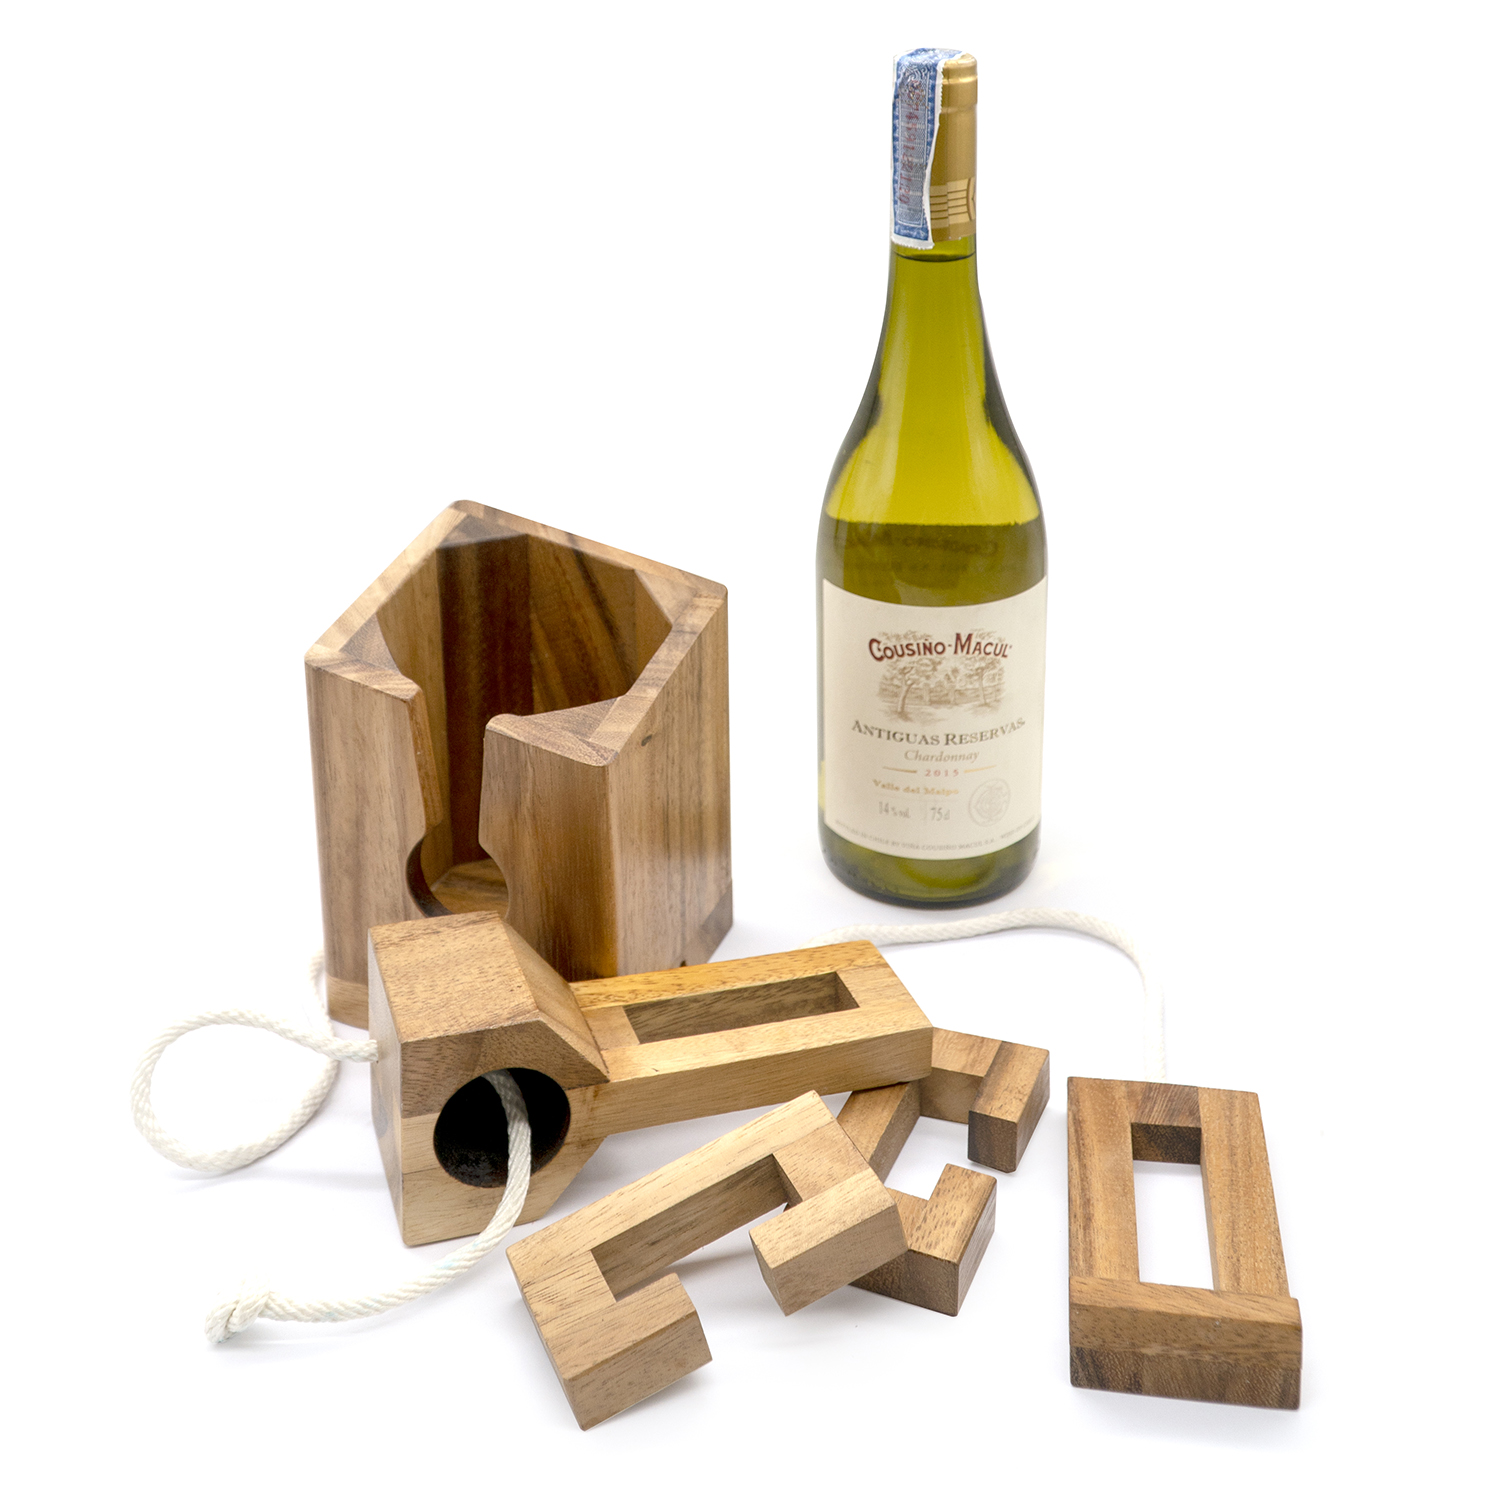 wooden wine bottle puzzle